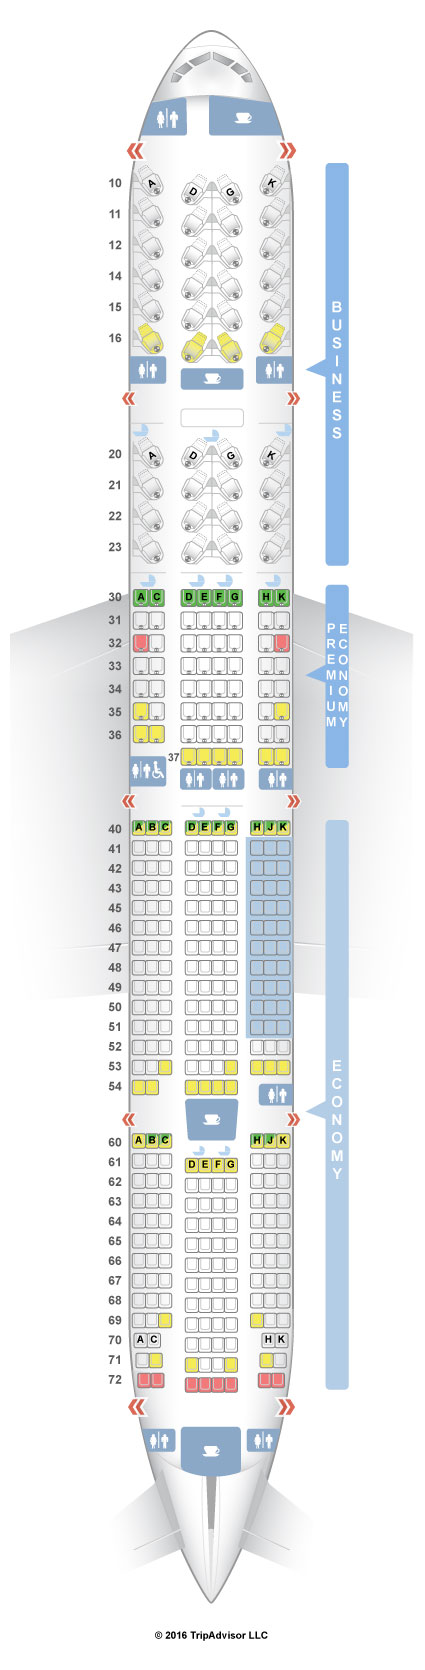 777 300 seat map air china